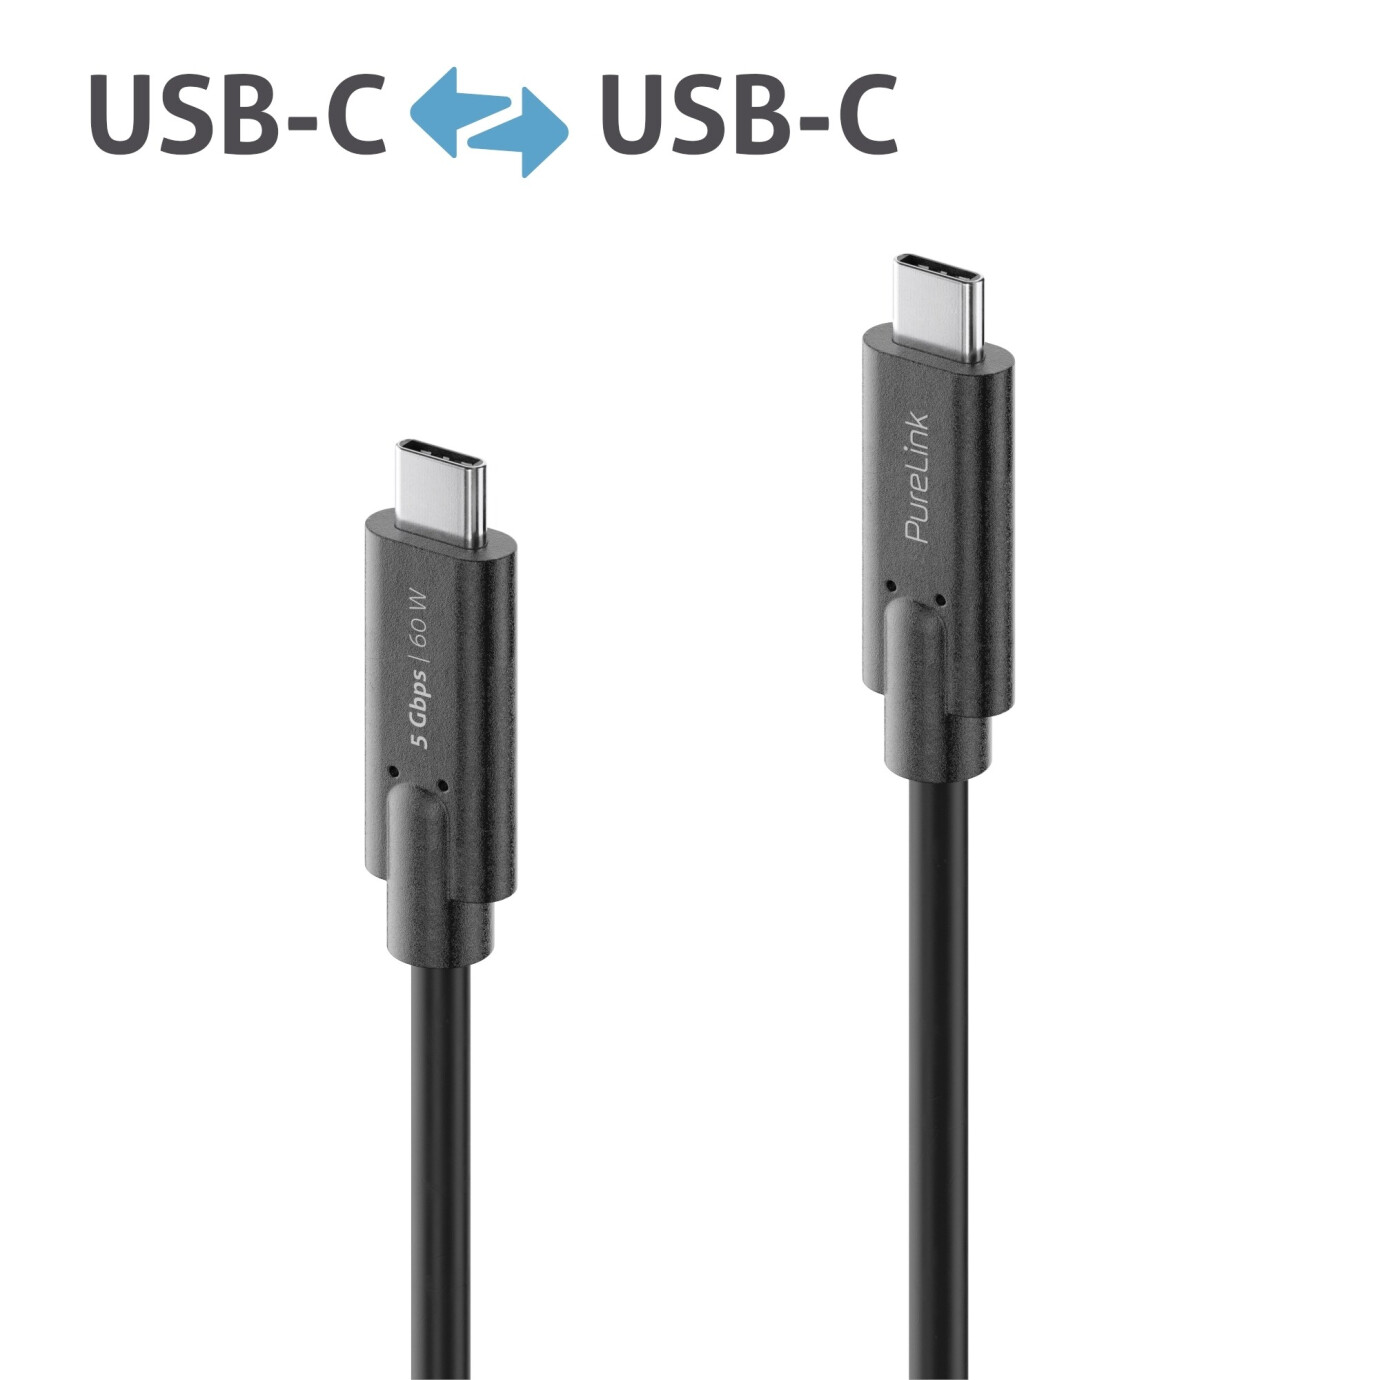 Purelink IS2501-010 USB-C auf USB-C Kabel 1m schwarz